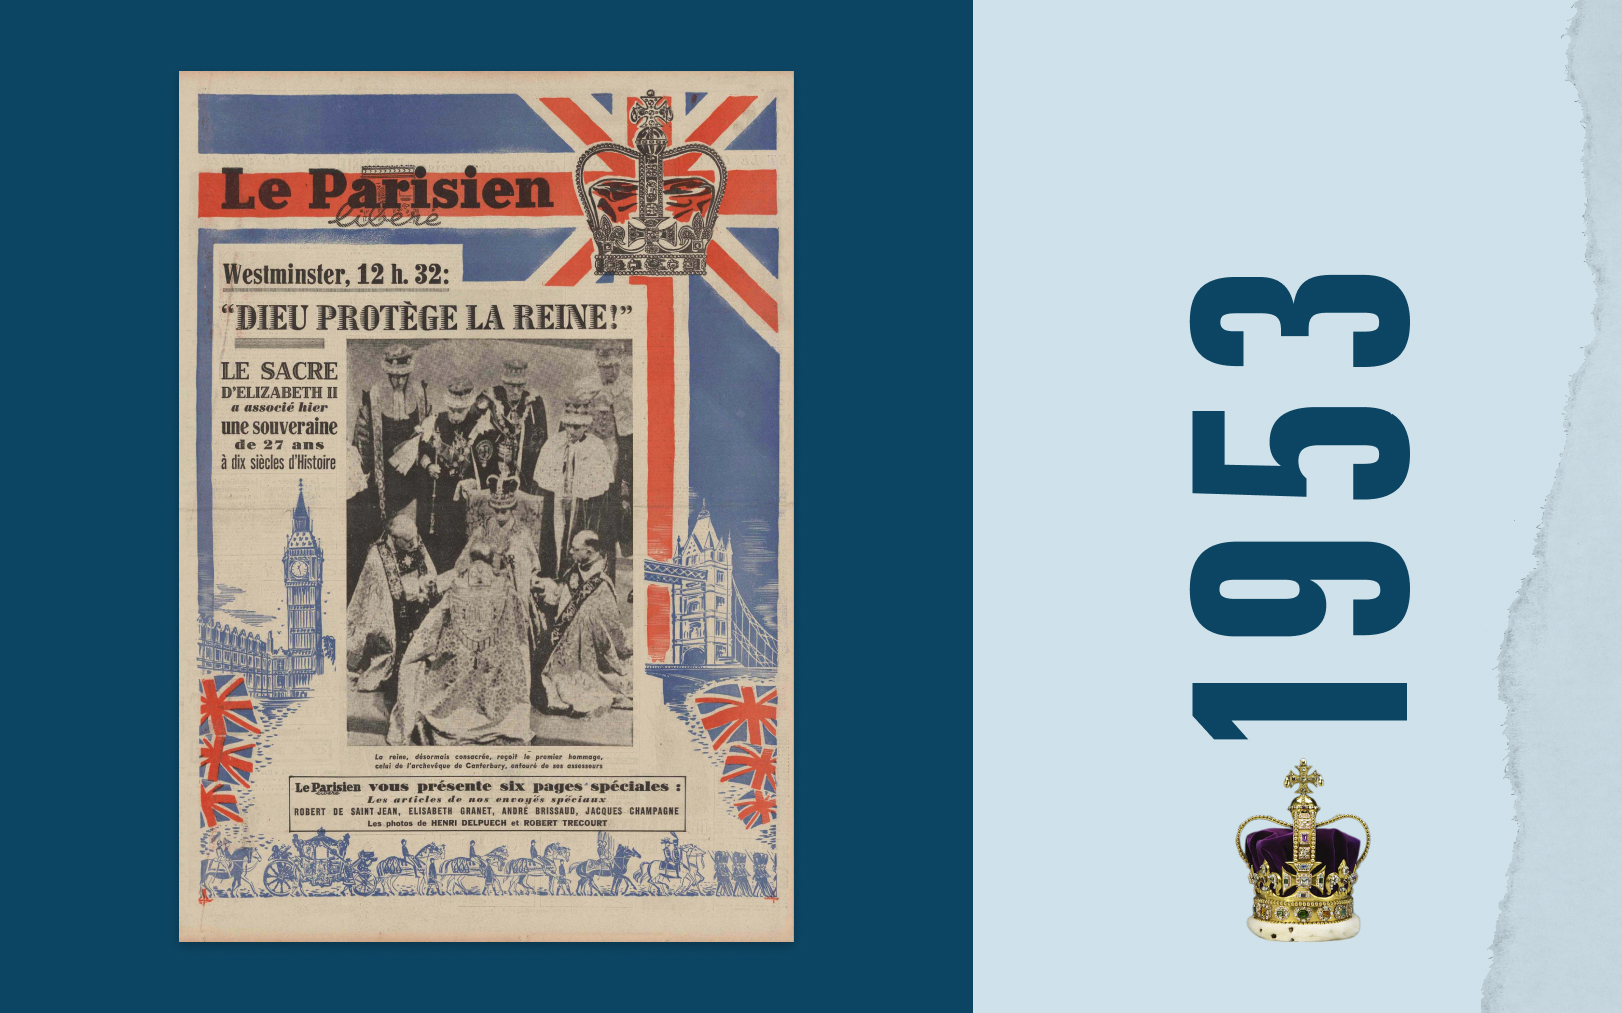 Dans l'édition spéciale datée du 3 juin 1953, Le Parisien libéré fait chatoyer sa une aux couleurs de l'Union Jack pour célébrer Elizabeth II. Une prouesse technique pour l’époque. Montage LP/DA/Abaca